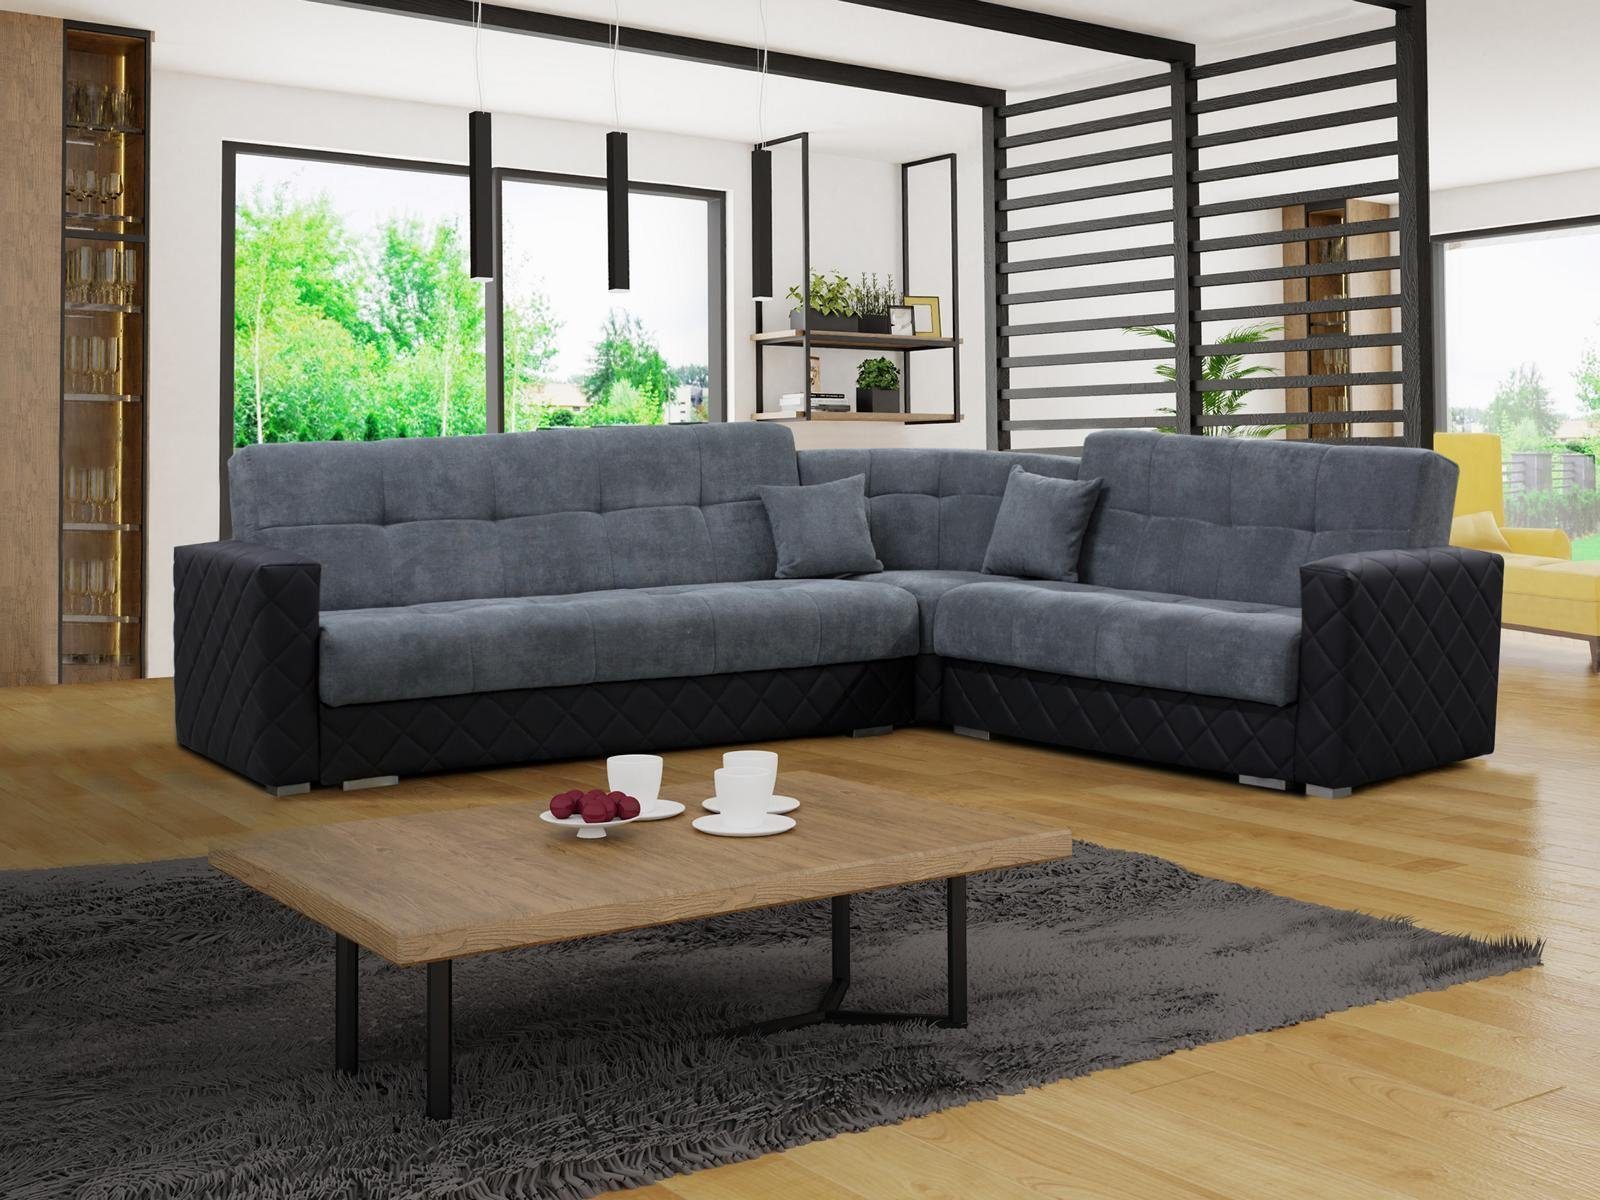 JVmoebel Ecksofa, Luxus Textil L Form Stoff Modern Ecken Couch Sofa Wohnlandschaft | Ecksofas